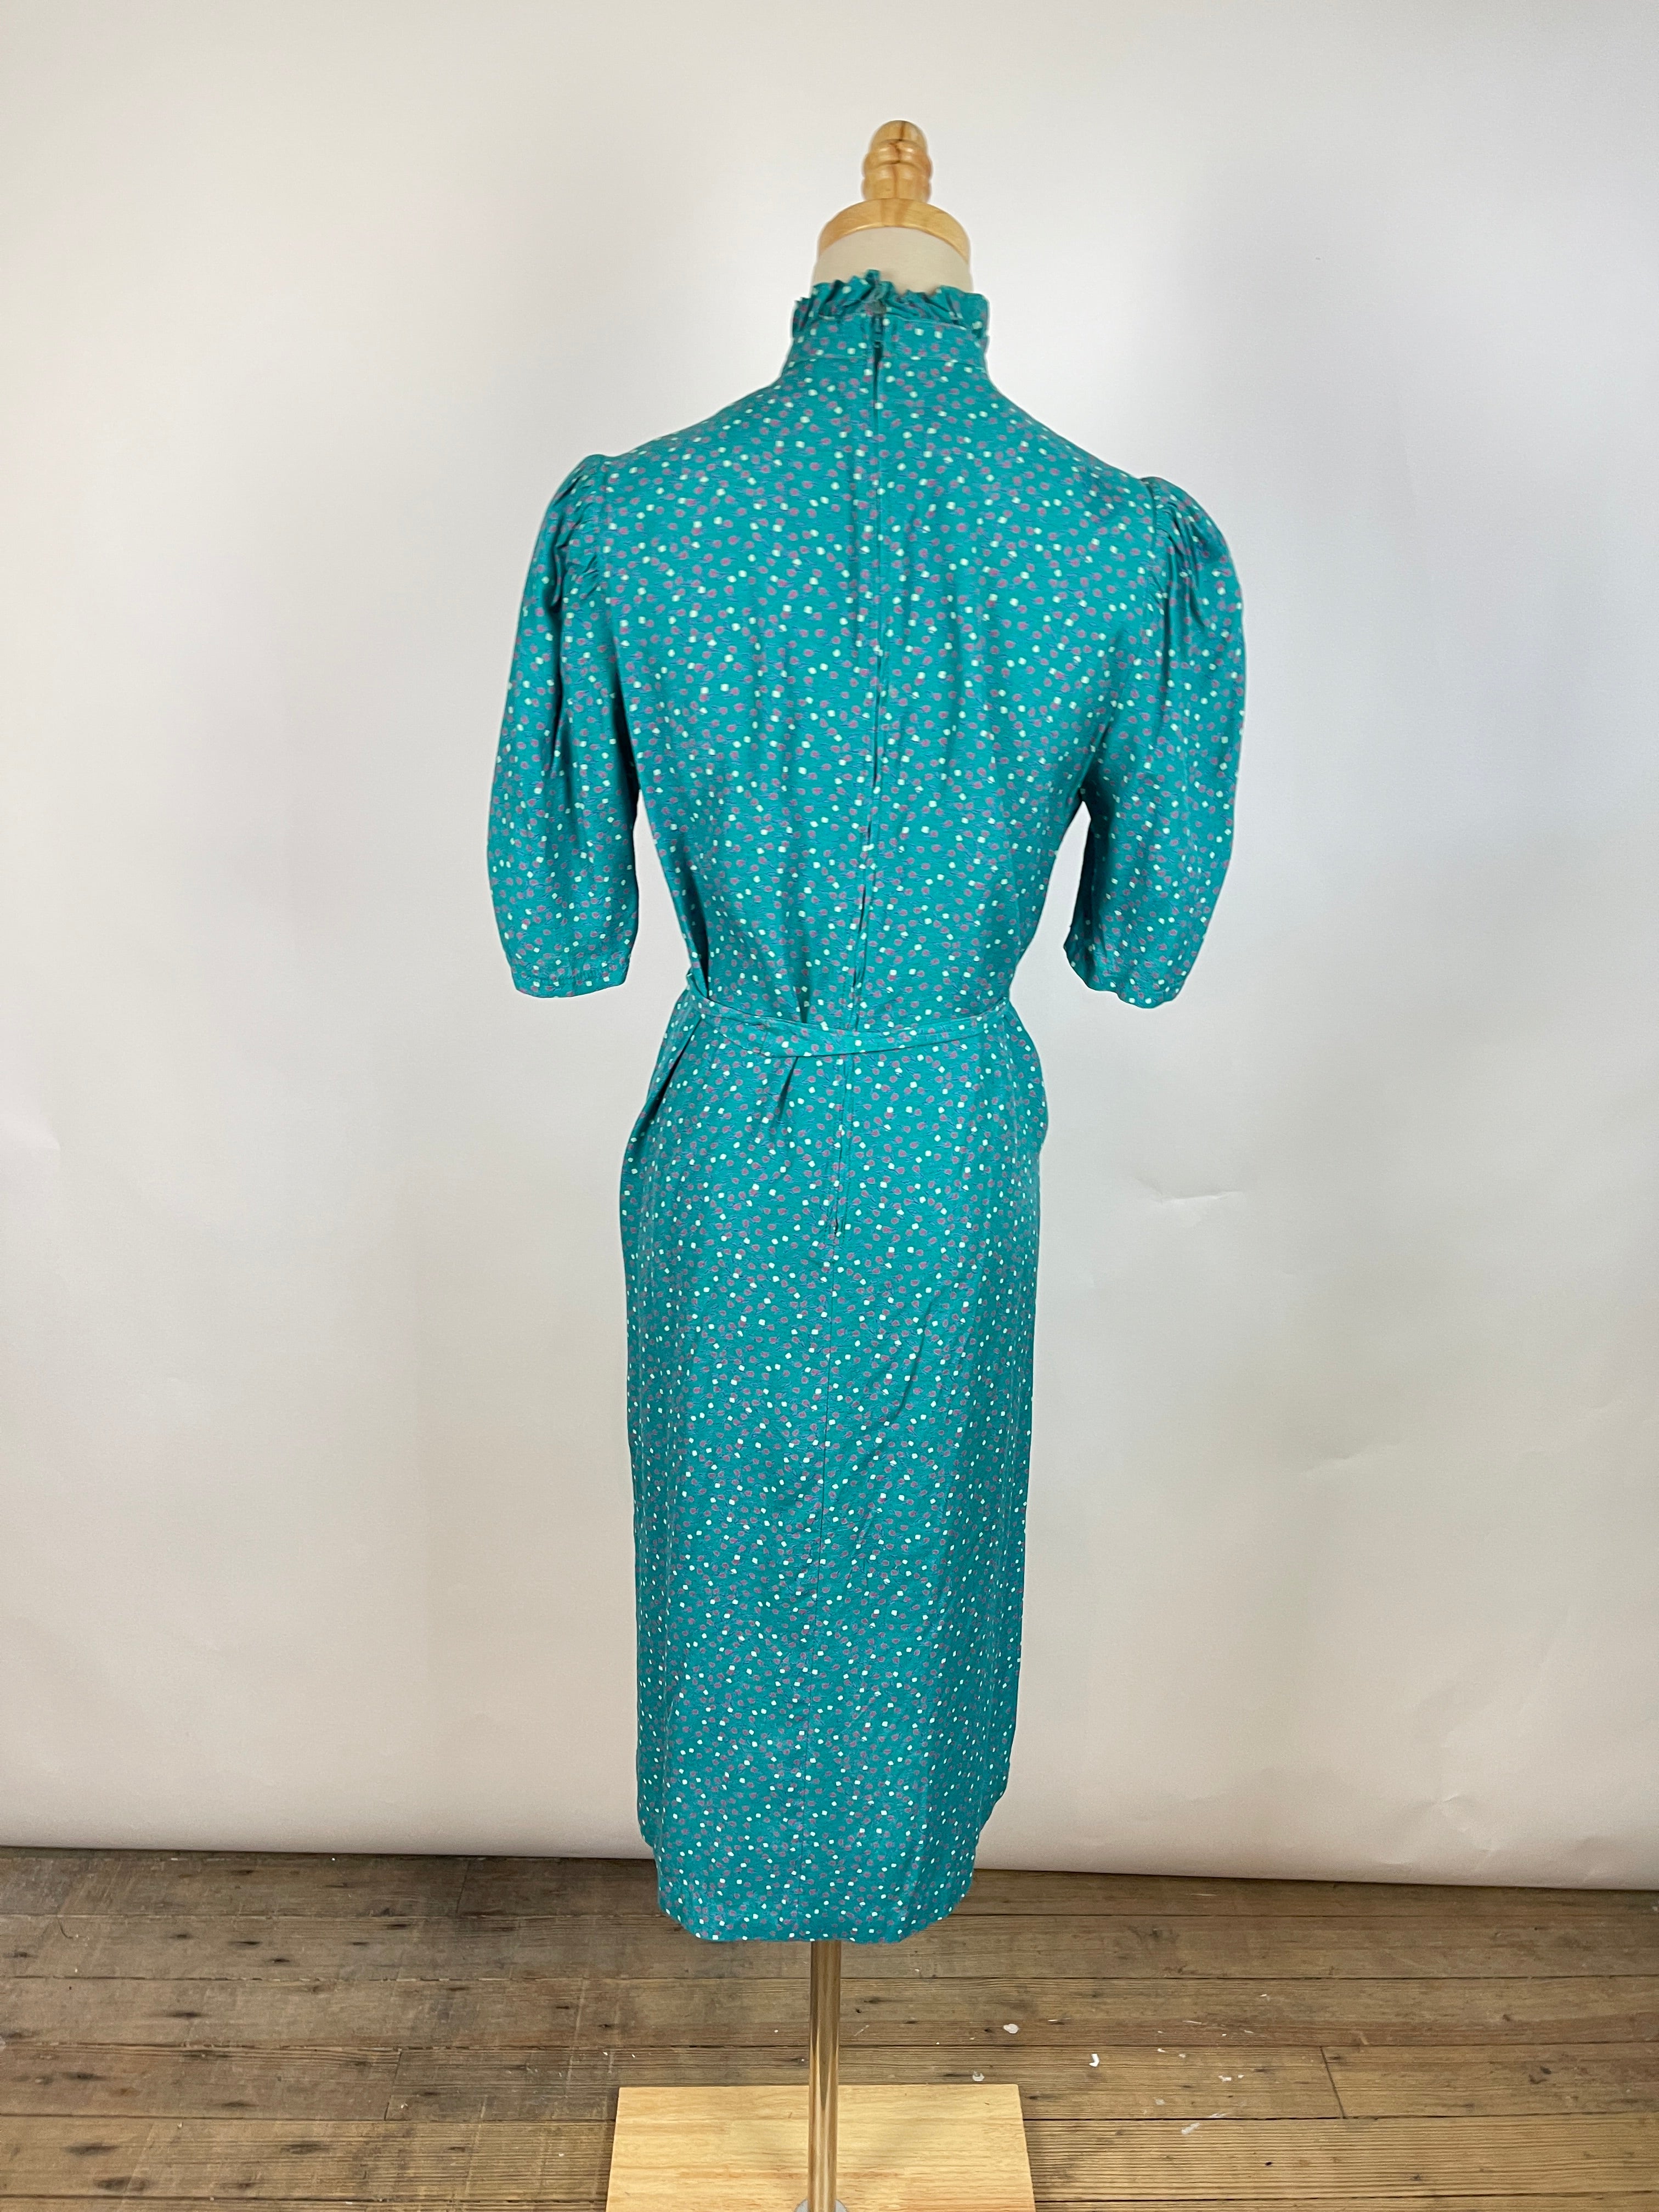 Vintage Teal Printed Dress (S)